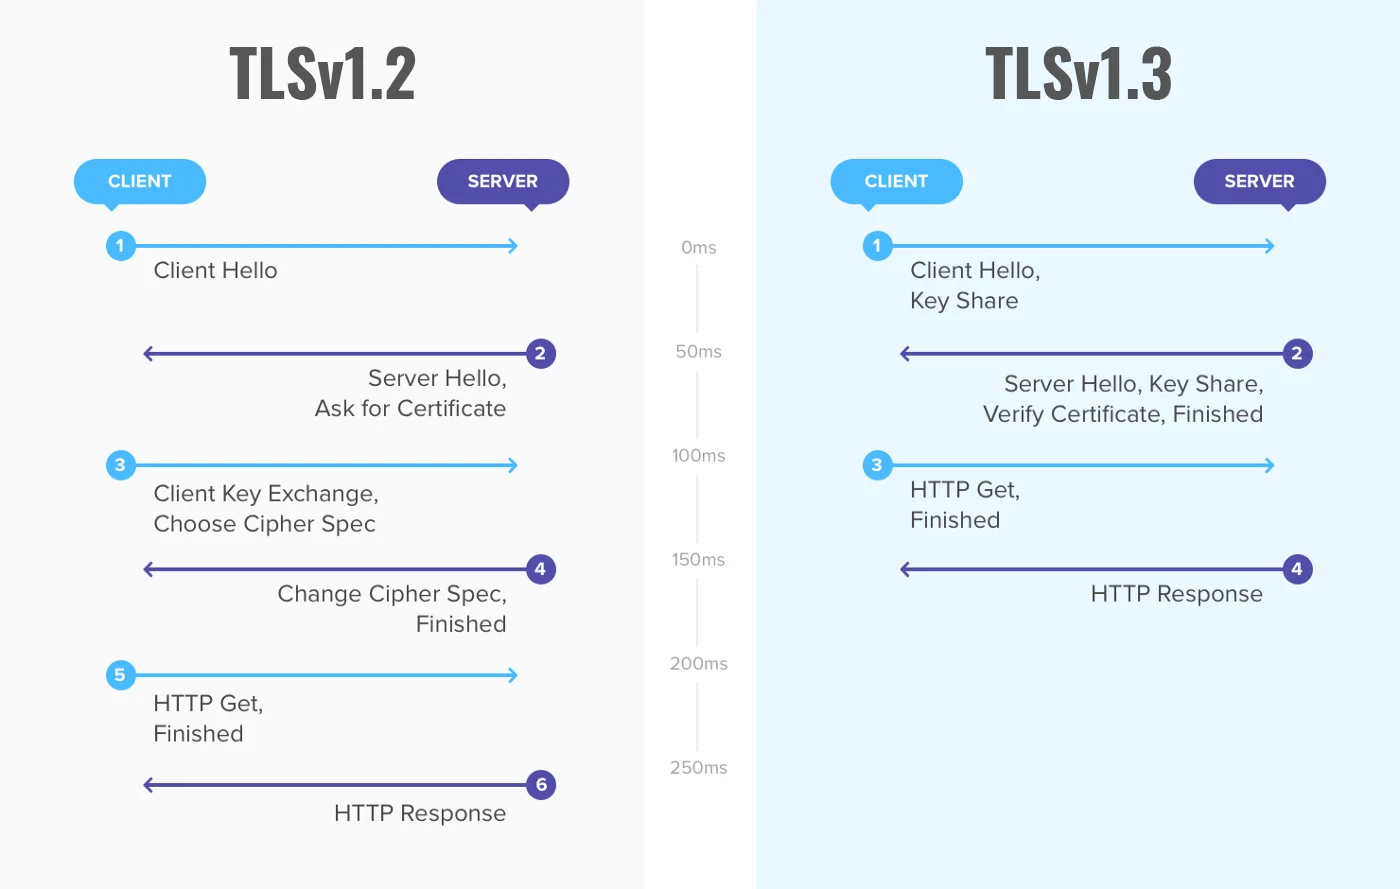 Skillnaderna mellan TLSv1.2 och TLSv1.3